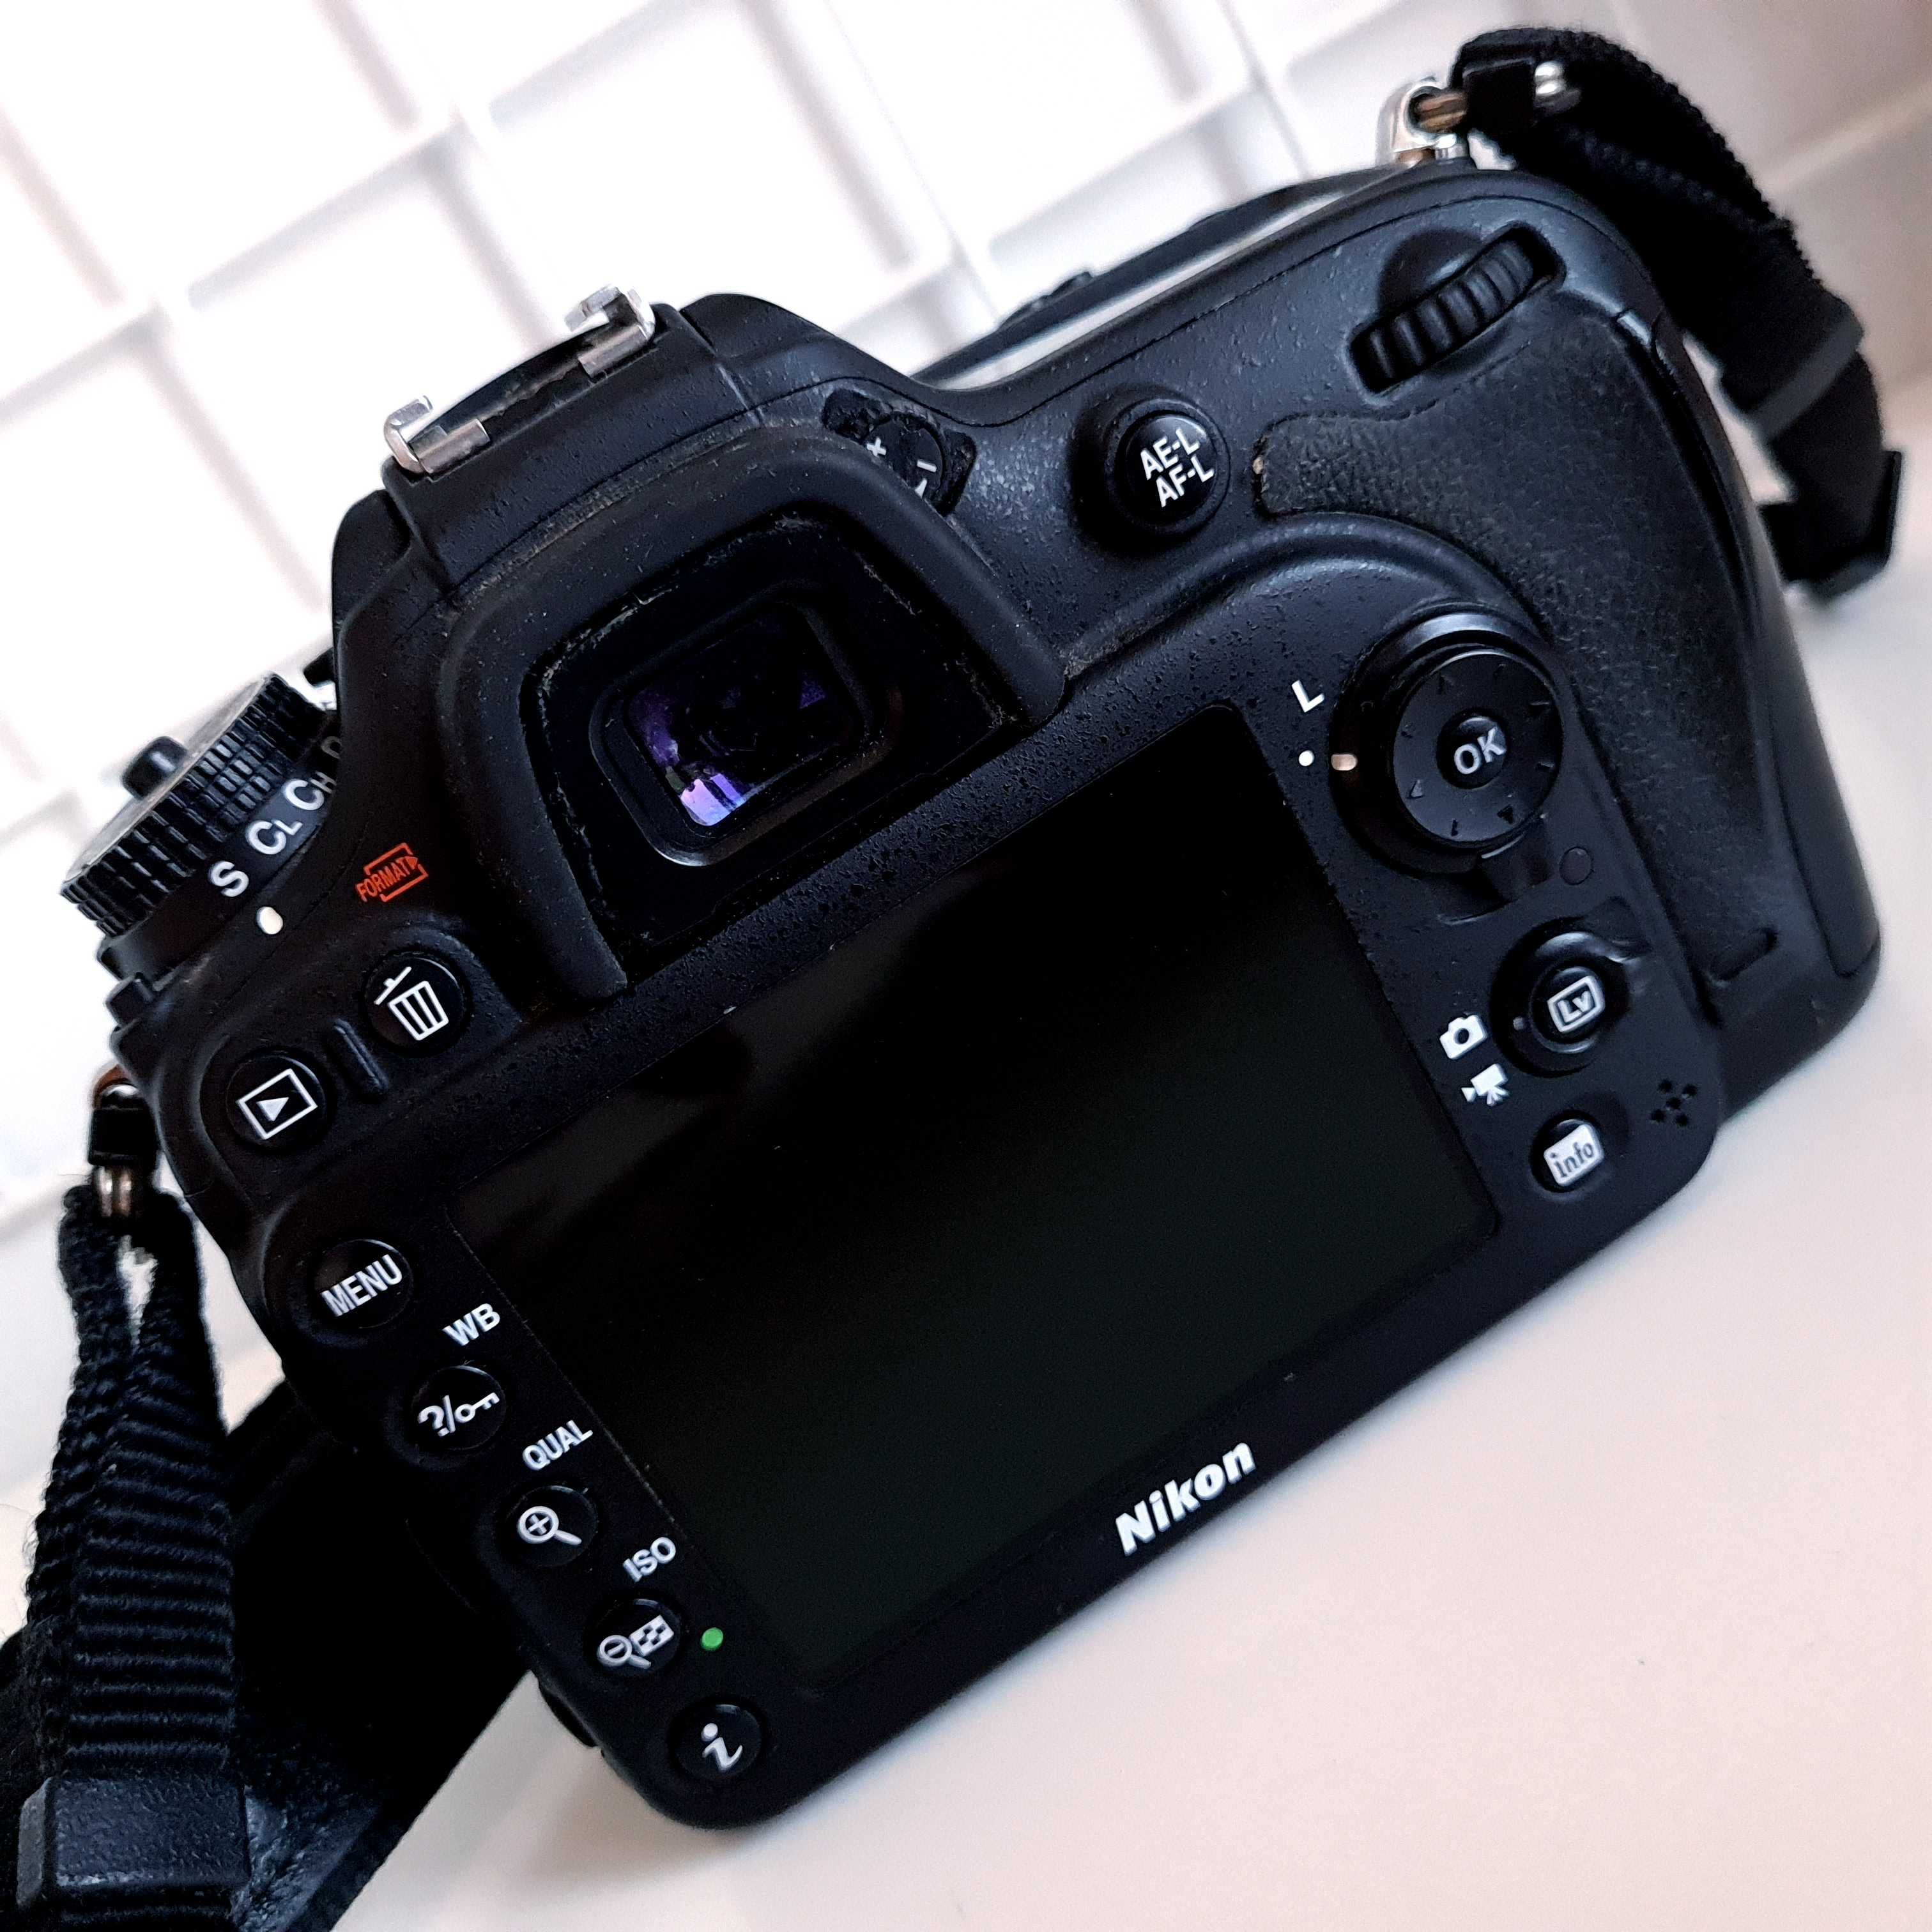 Nikon D7100 + 50 mm 1.4